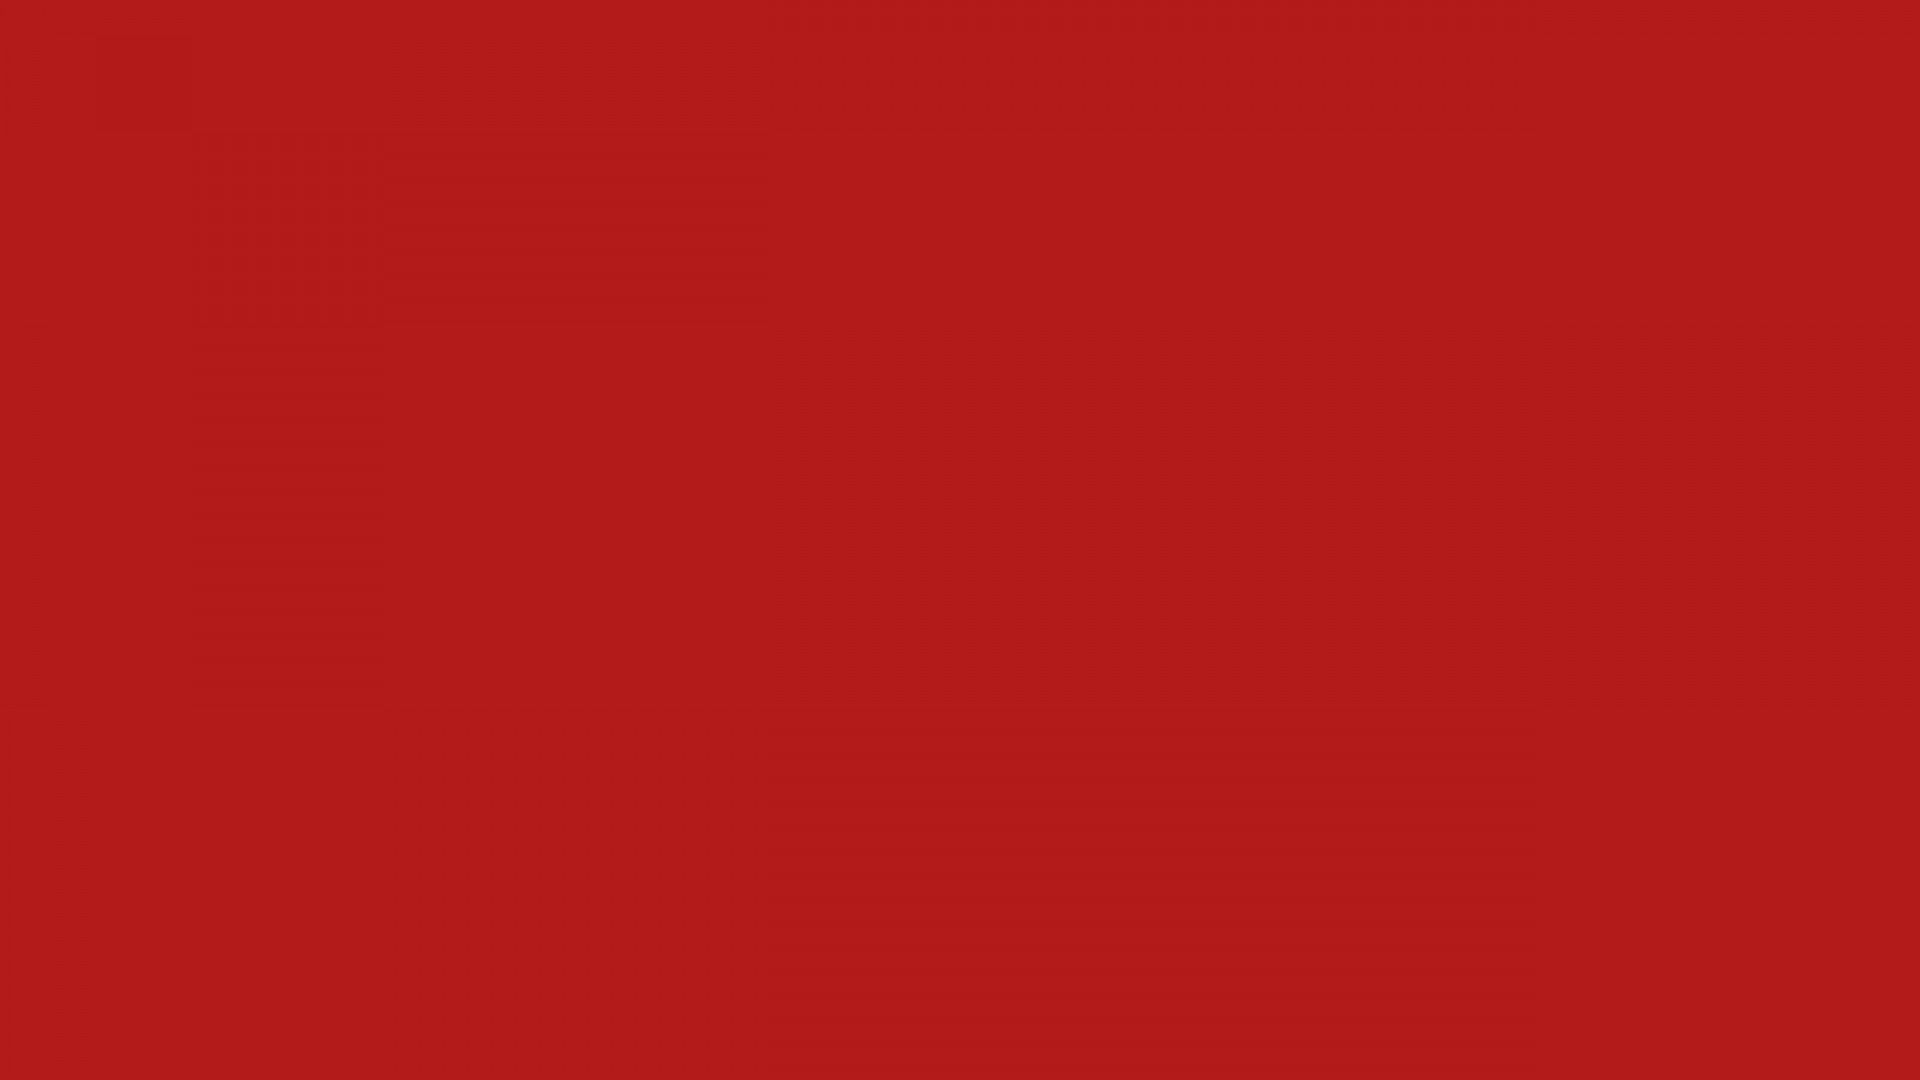 Hình nền desktop đỏ: Trang trí cho desktop của bạn với hình nền đỏ đậm, phù hợp với phong cách của bạn và thêm sức sống cho bộ máy tính. 